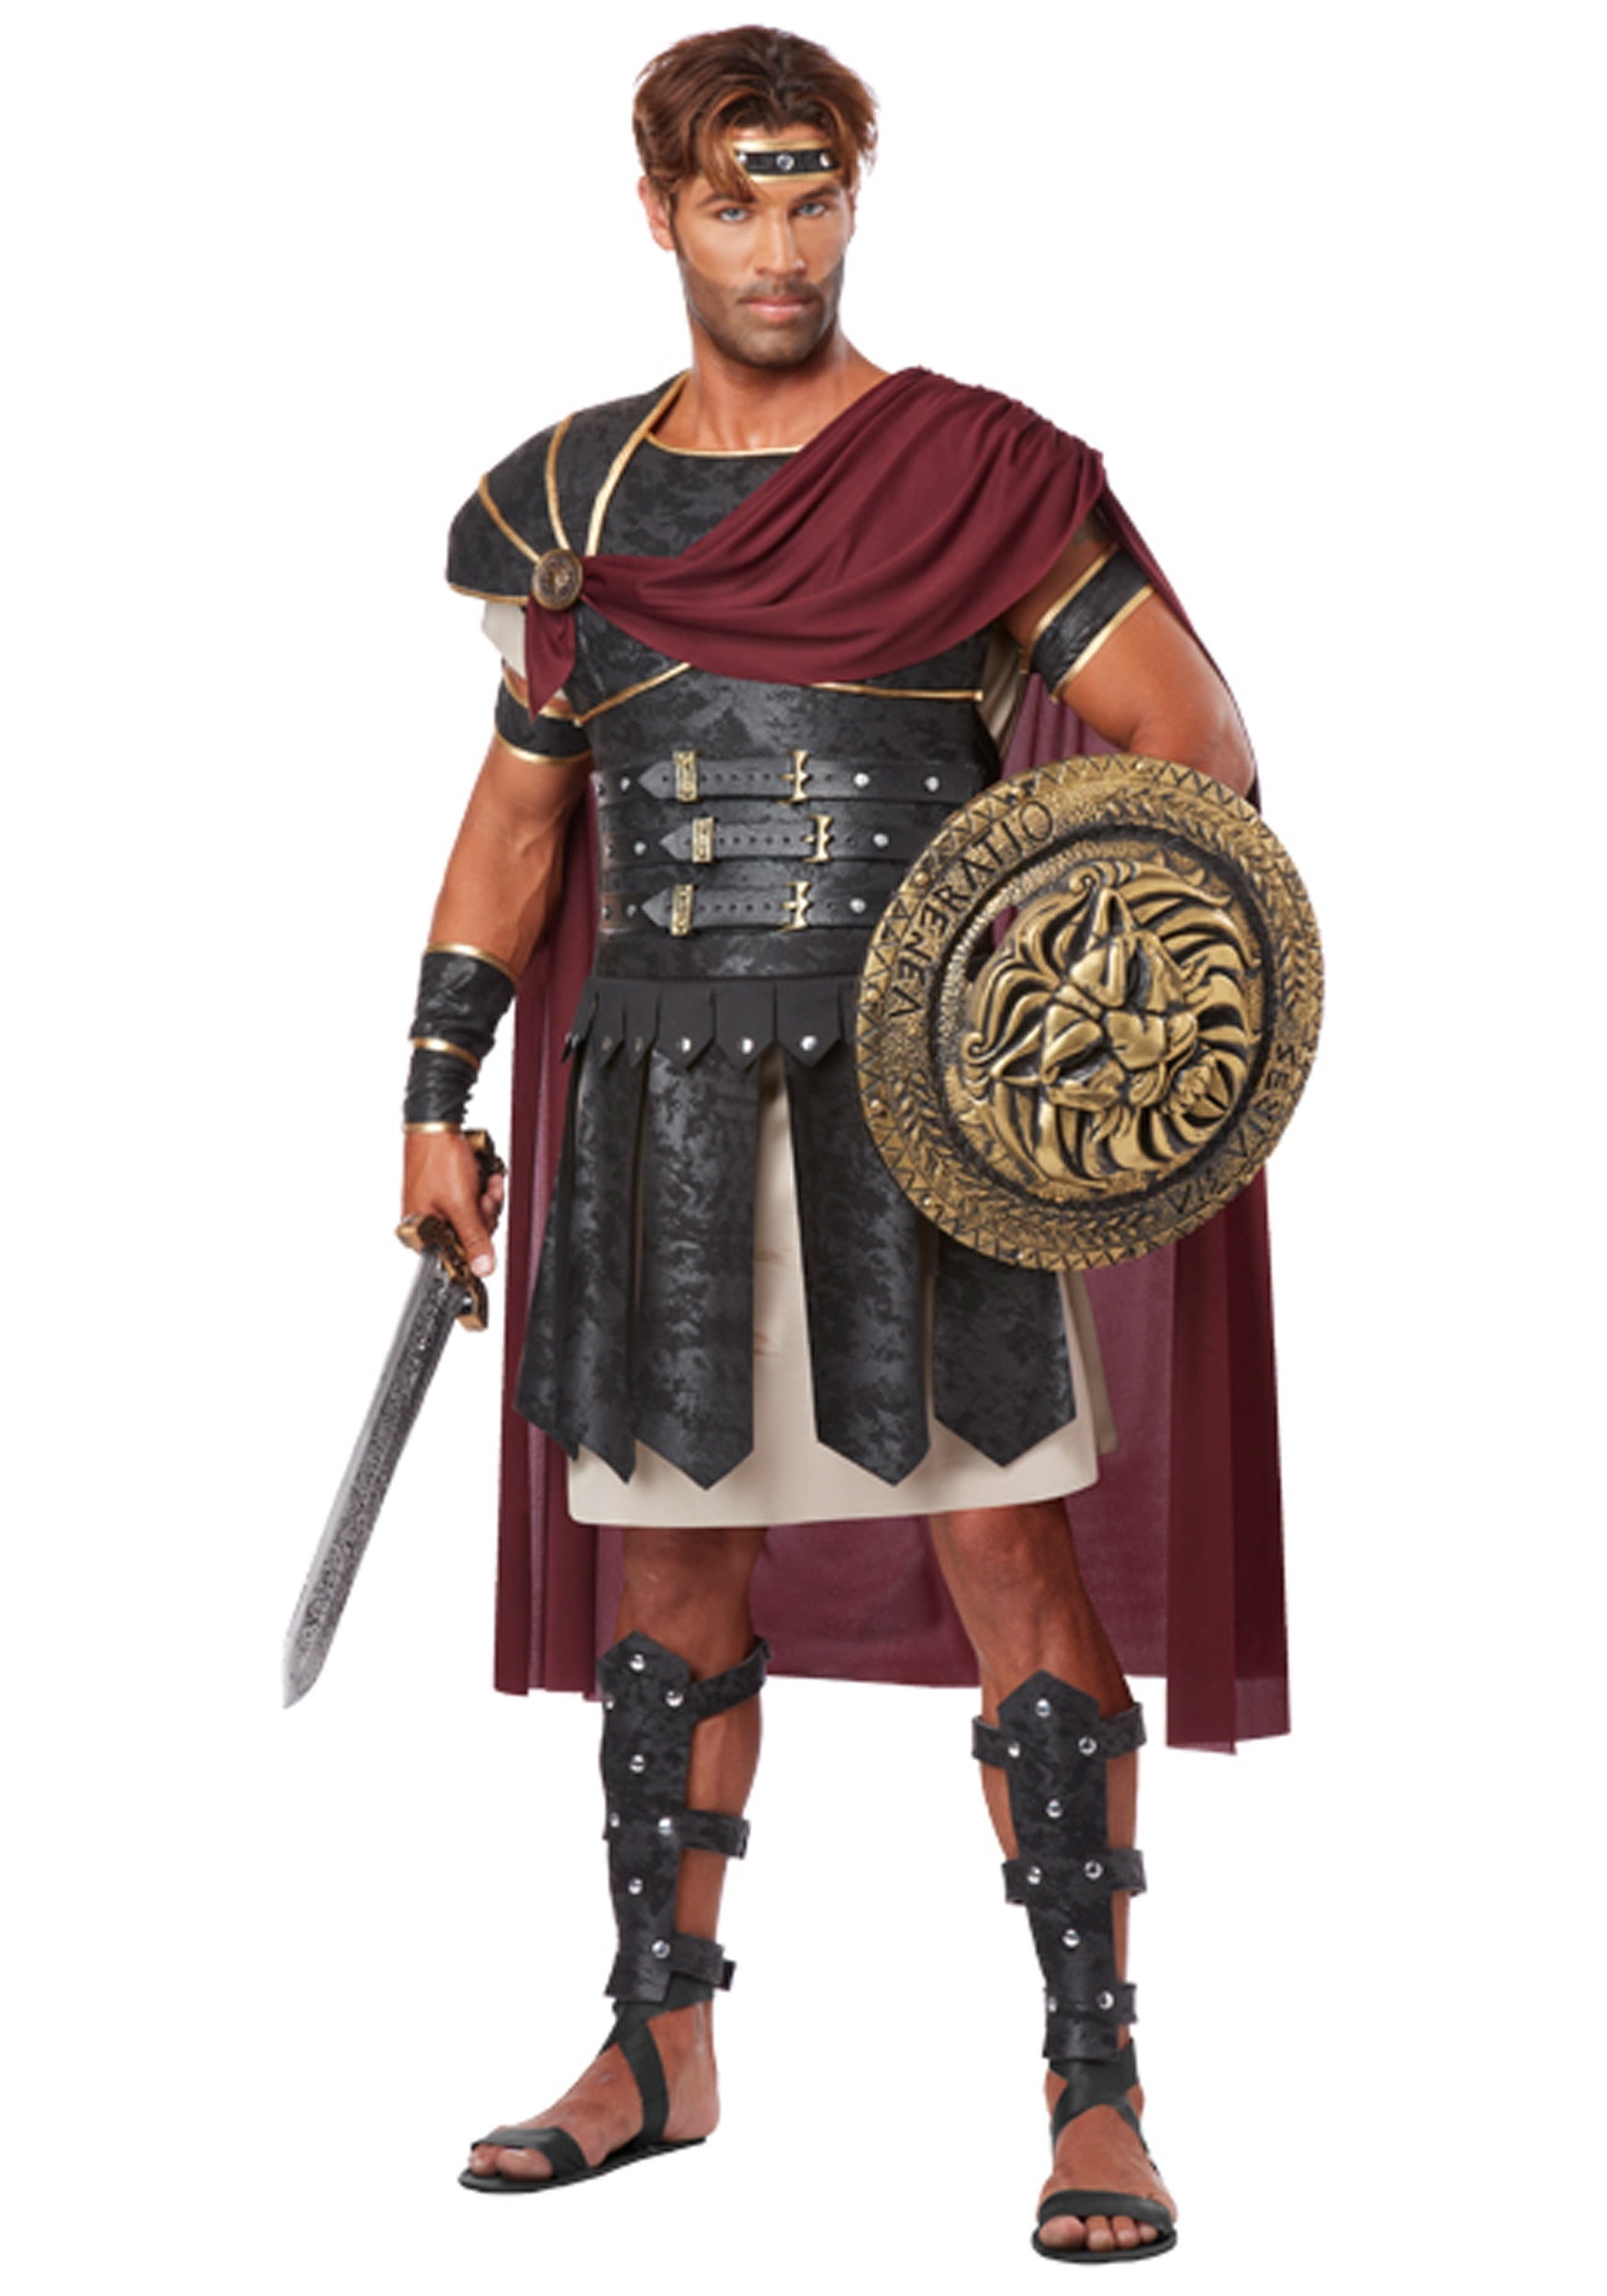 Men's Gladiator Maximus Arena Costume